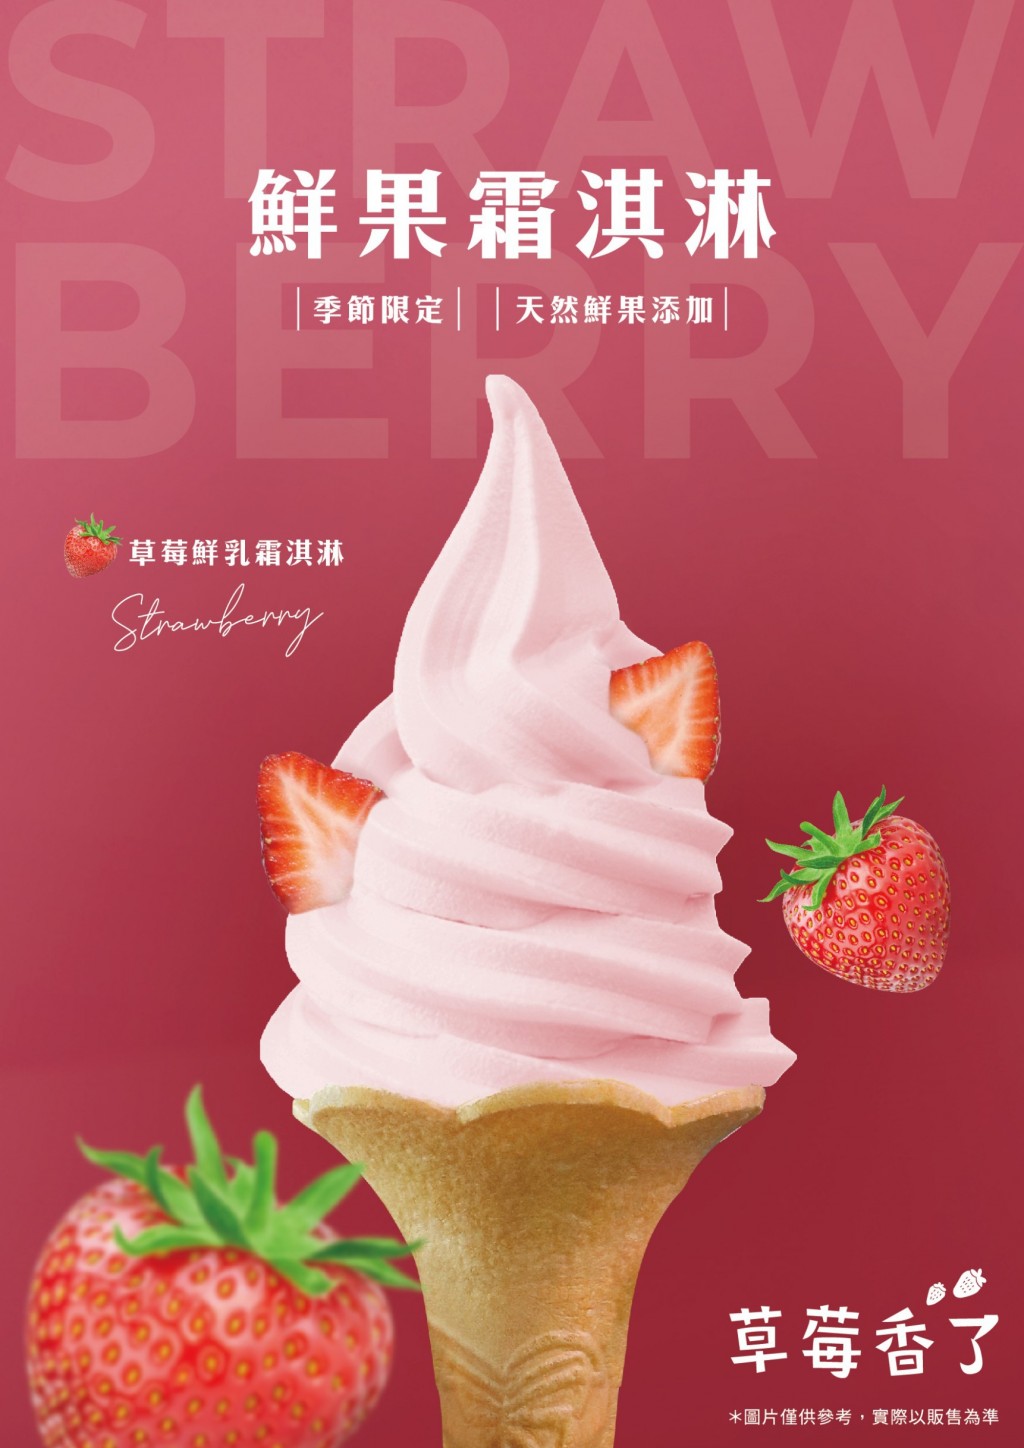 迎接草莓季！大苑子X台灣優格餅乾學院 推出「莓好成雙曲奇餅禮盒」濃郁果、奶香完美搭配 齒頰留香